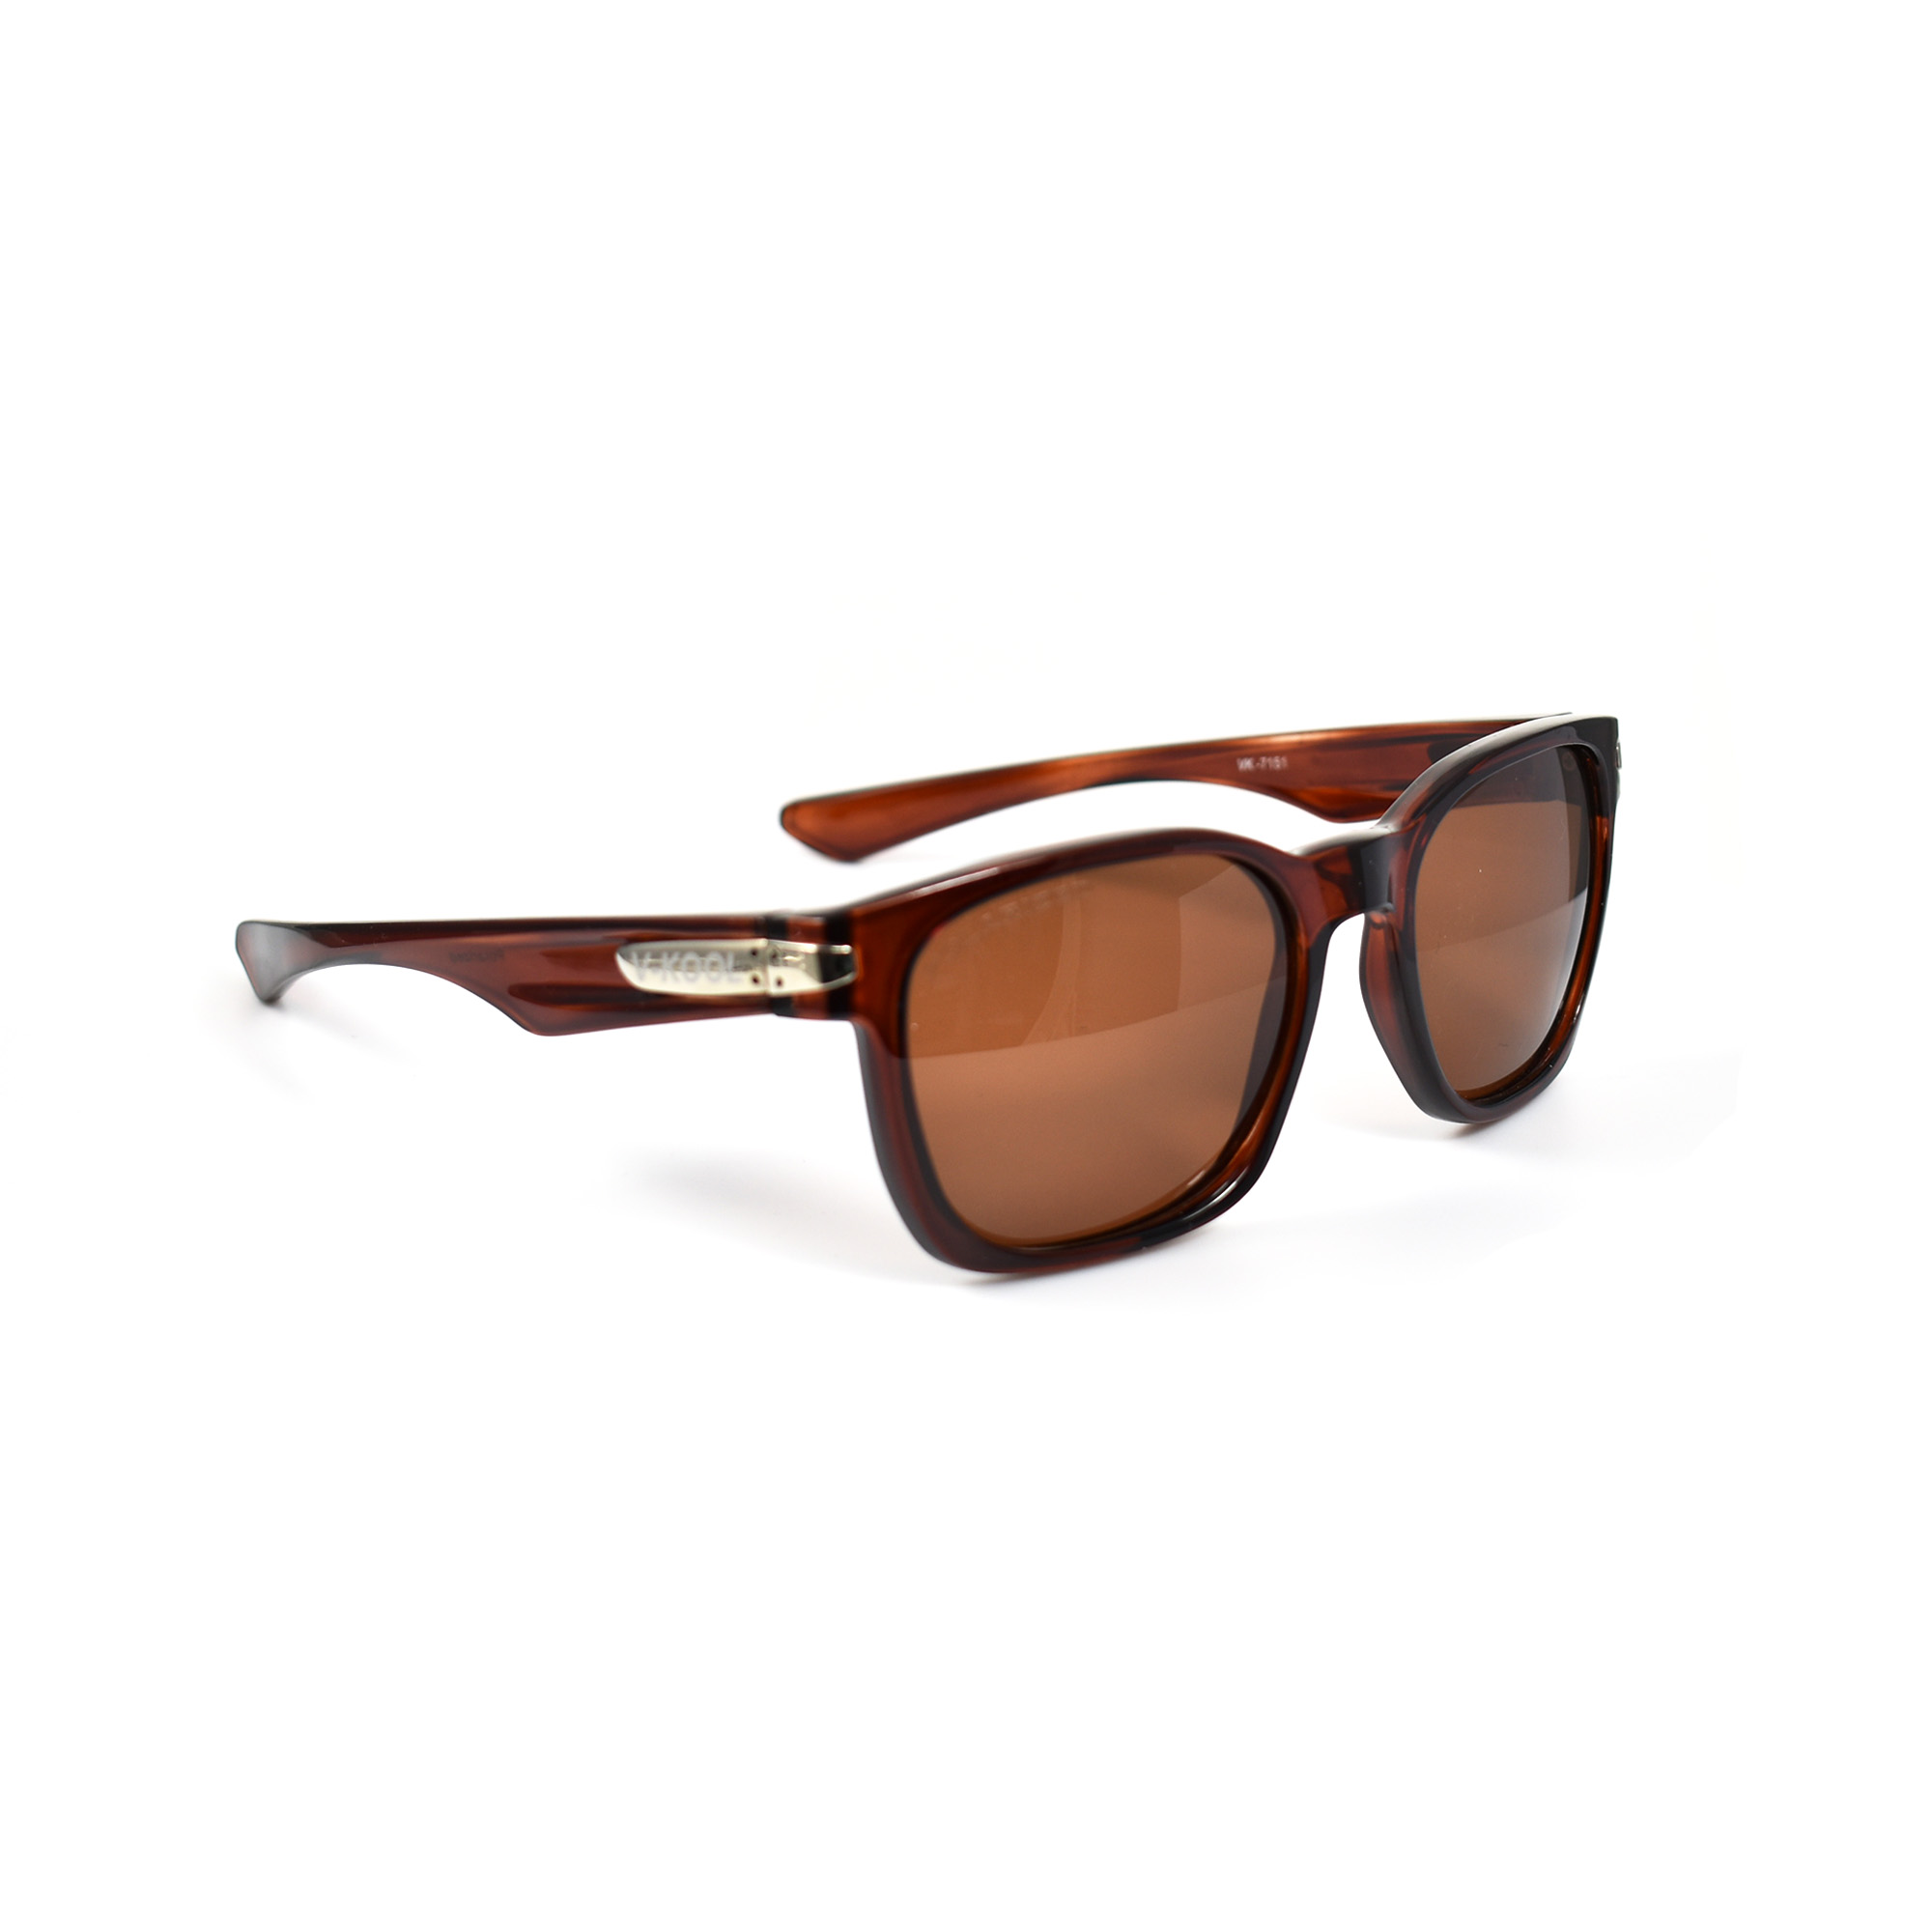 Verrill Brown Polarized Sunglasses